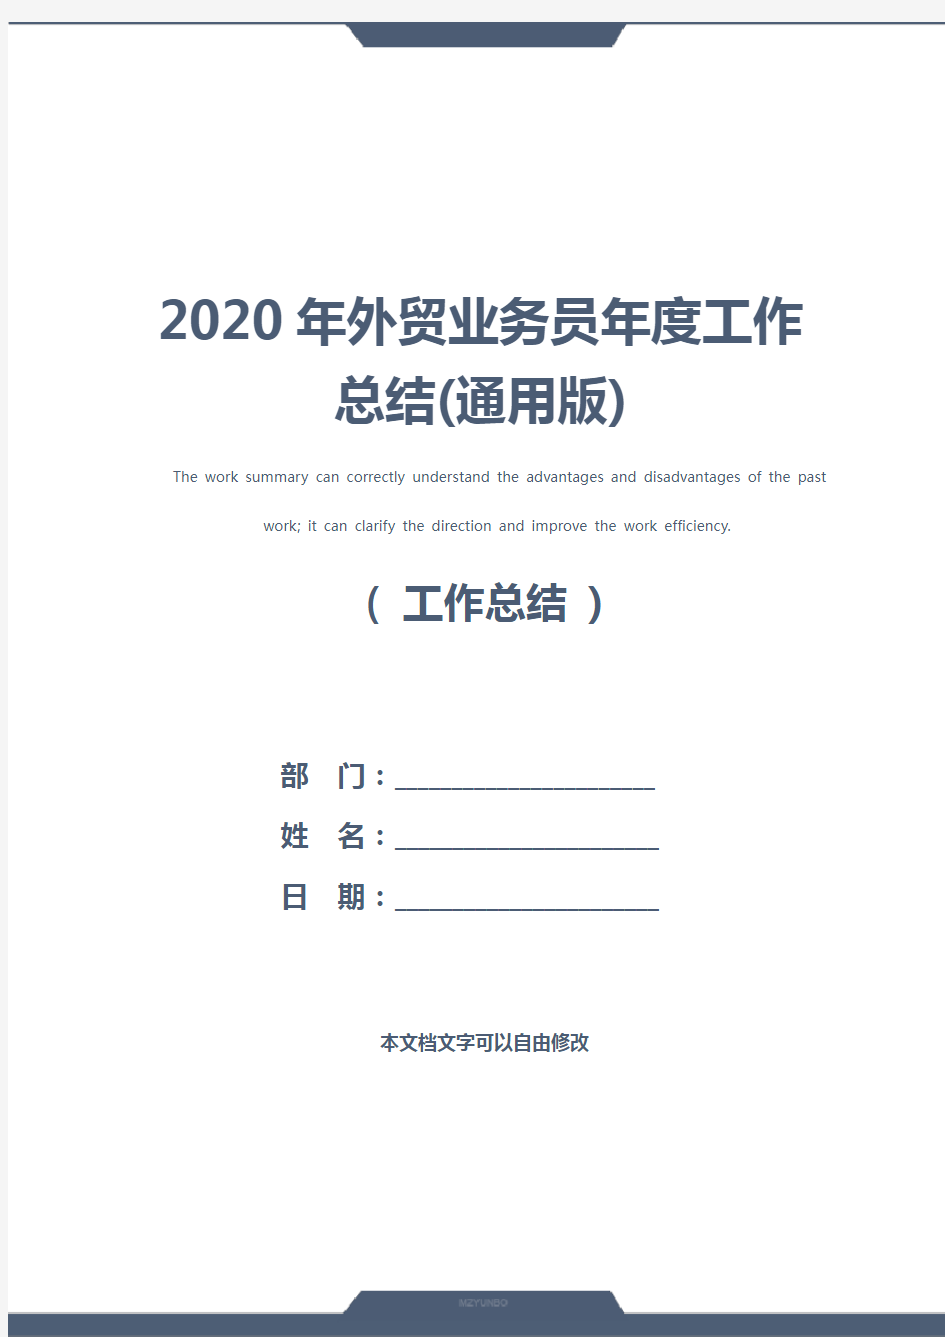 2020年外贸业务员年度工作总结(通用版)